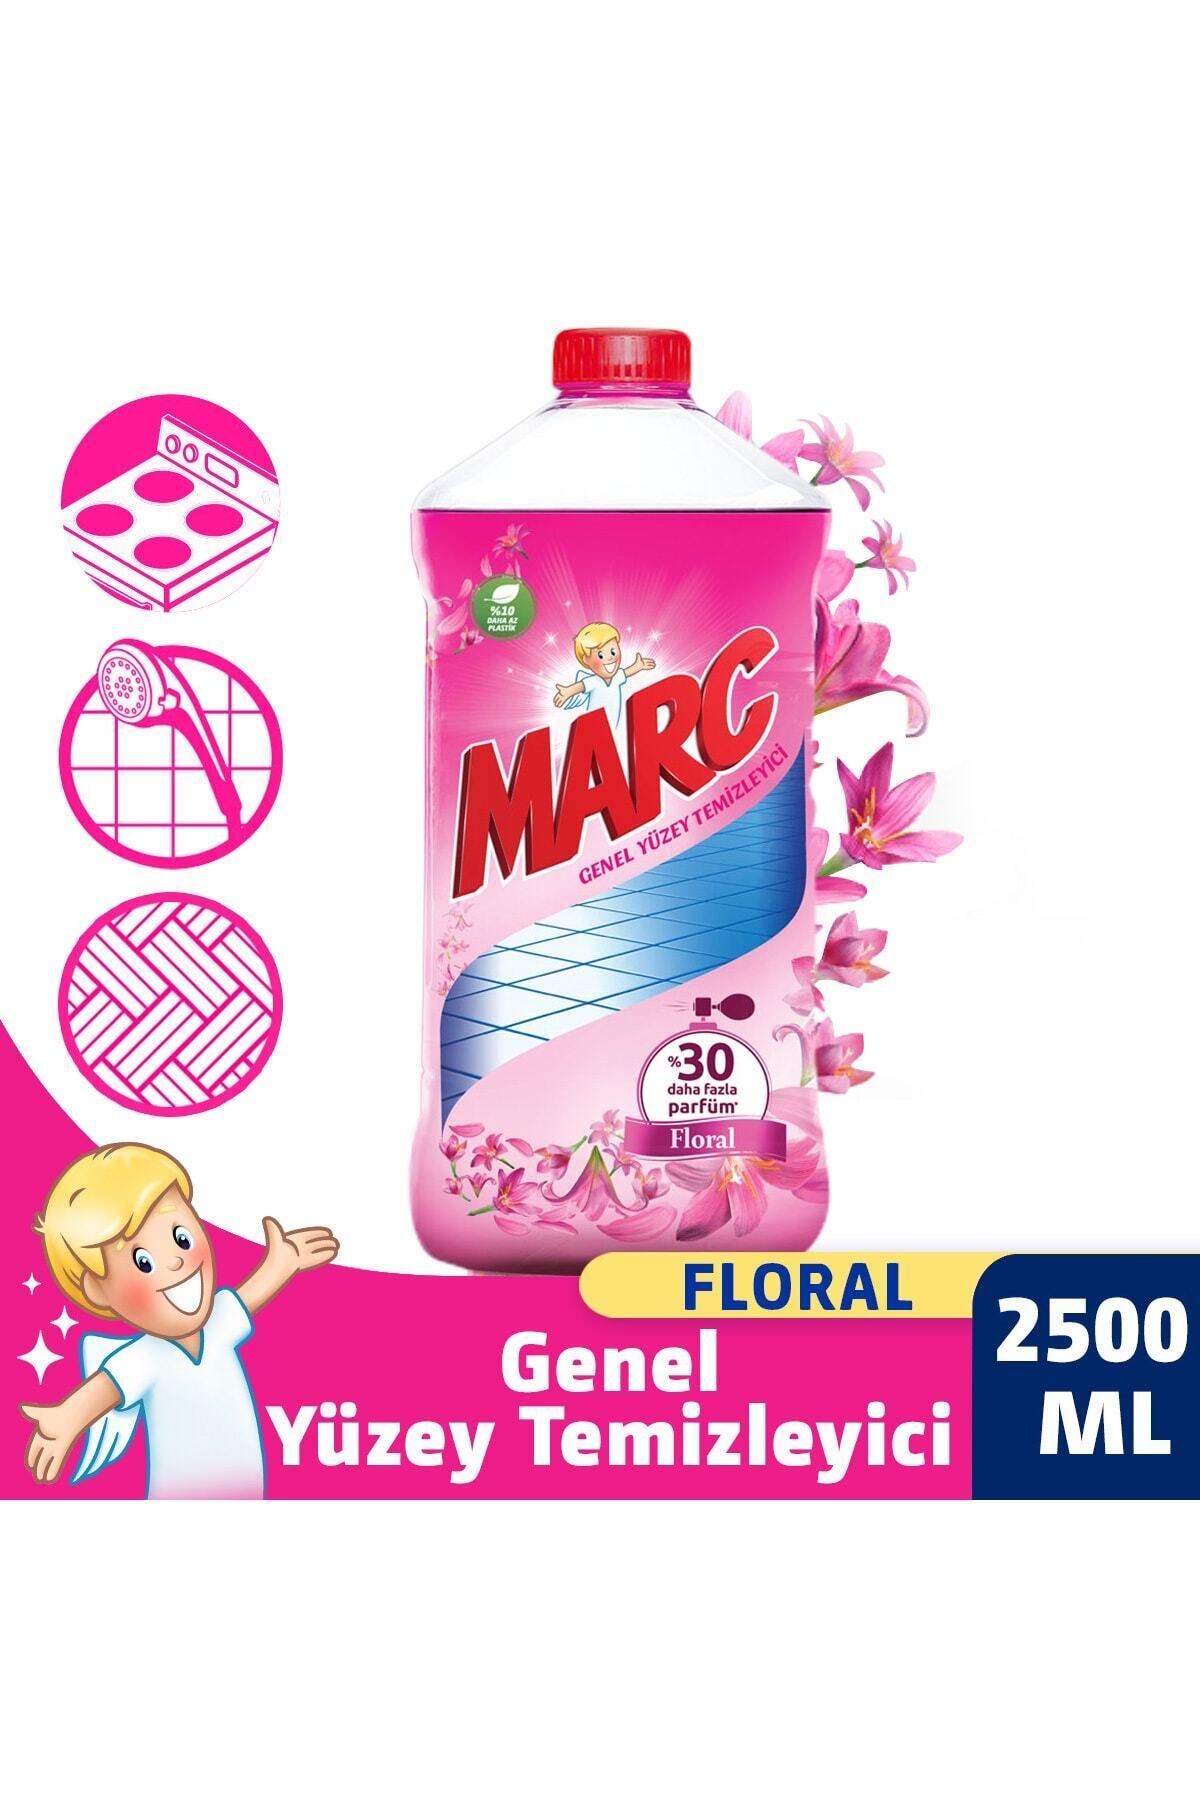 Marc Yüzey Temizleyici Floral 2500 ml